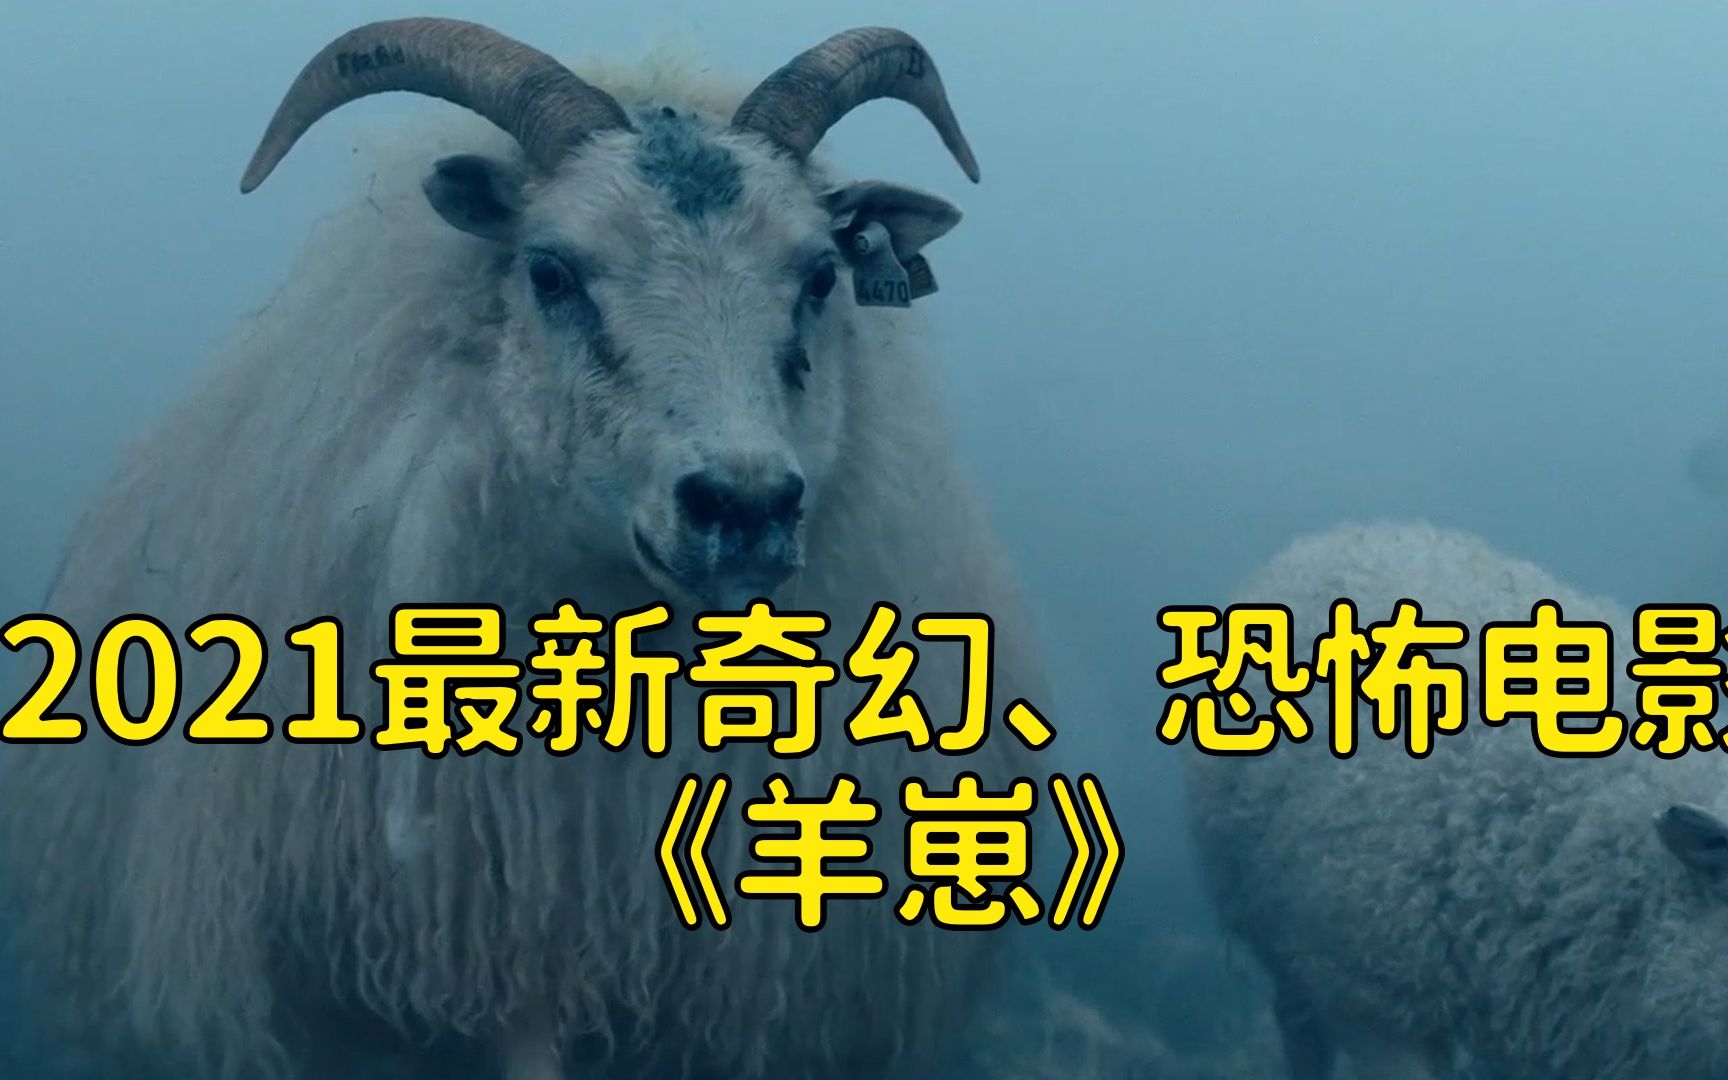 《疯羊》-高清电影-完整版在线观看